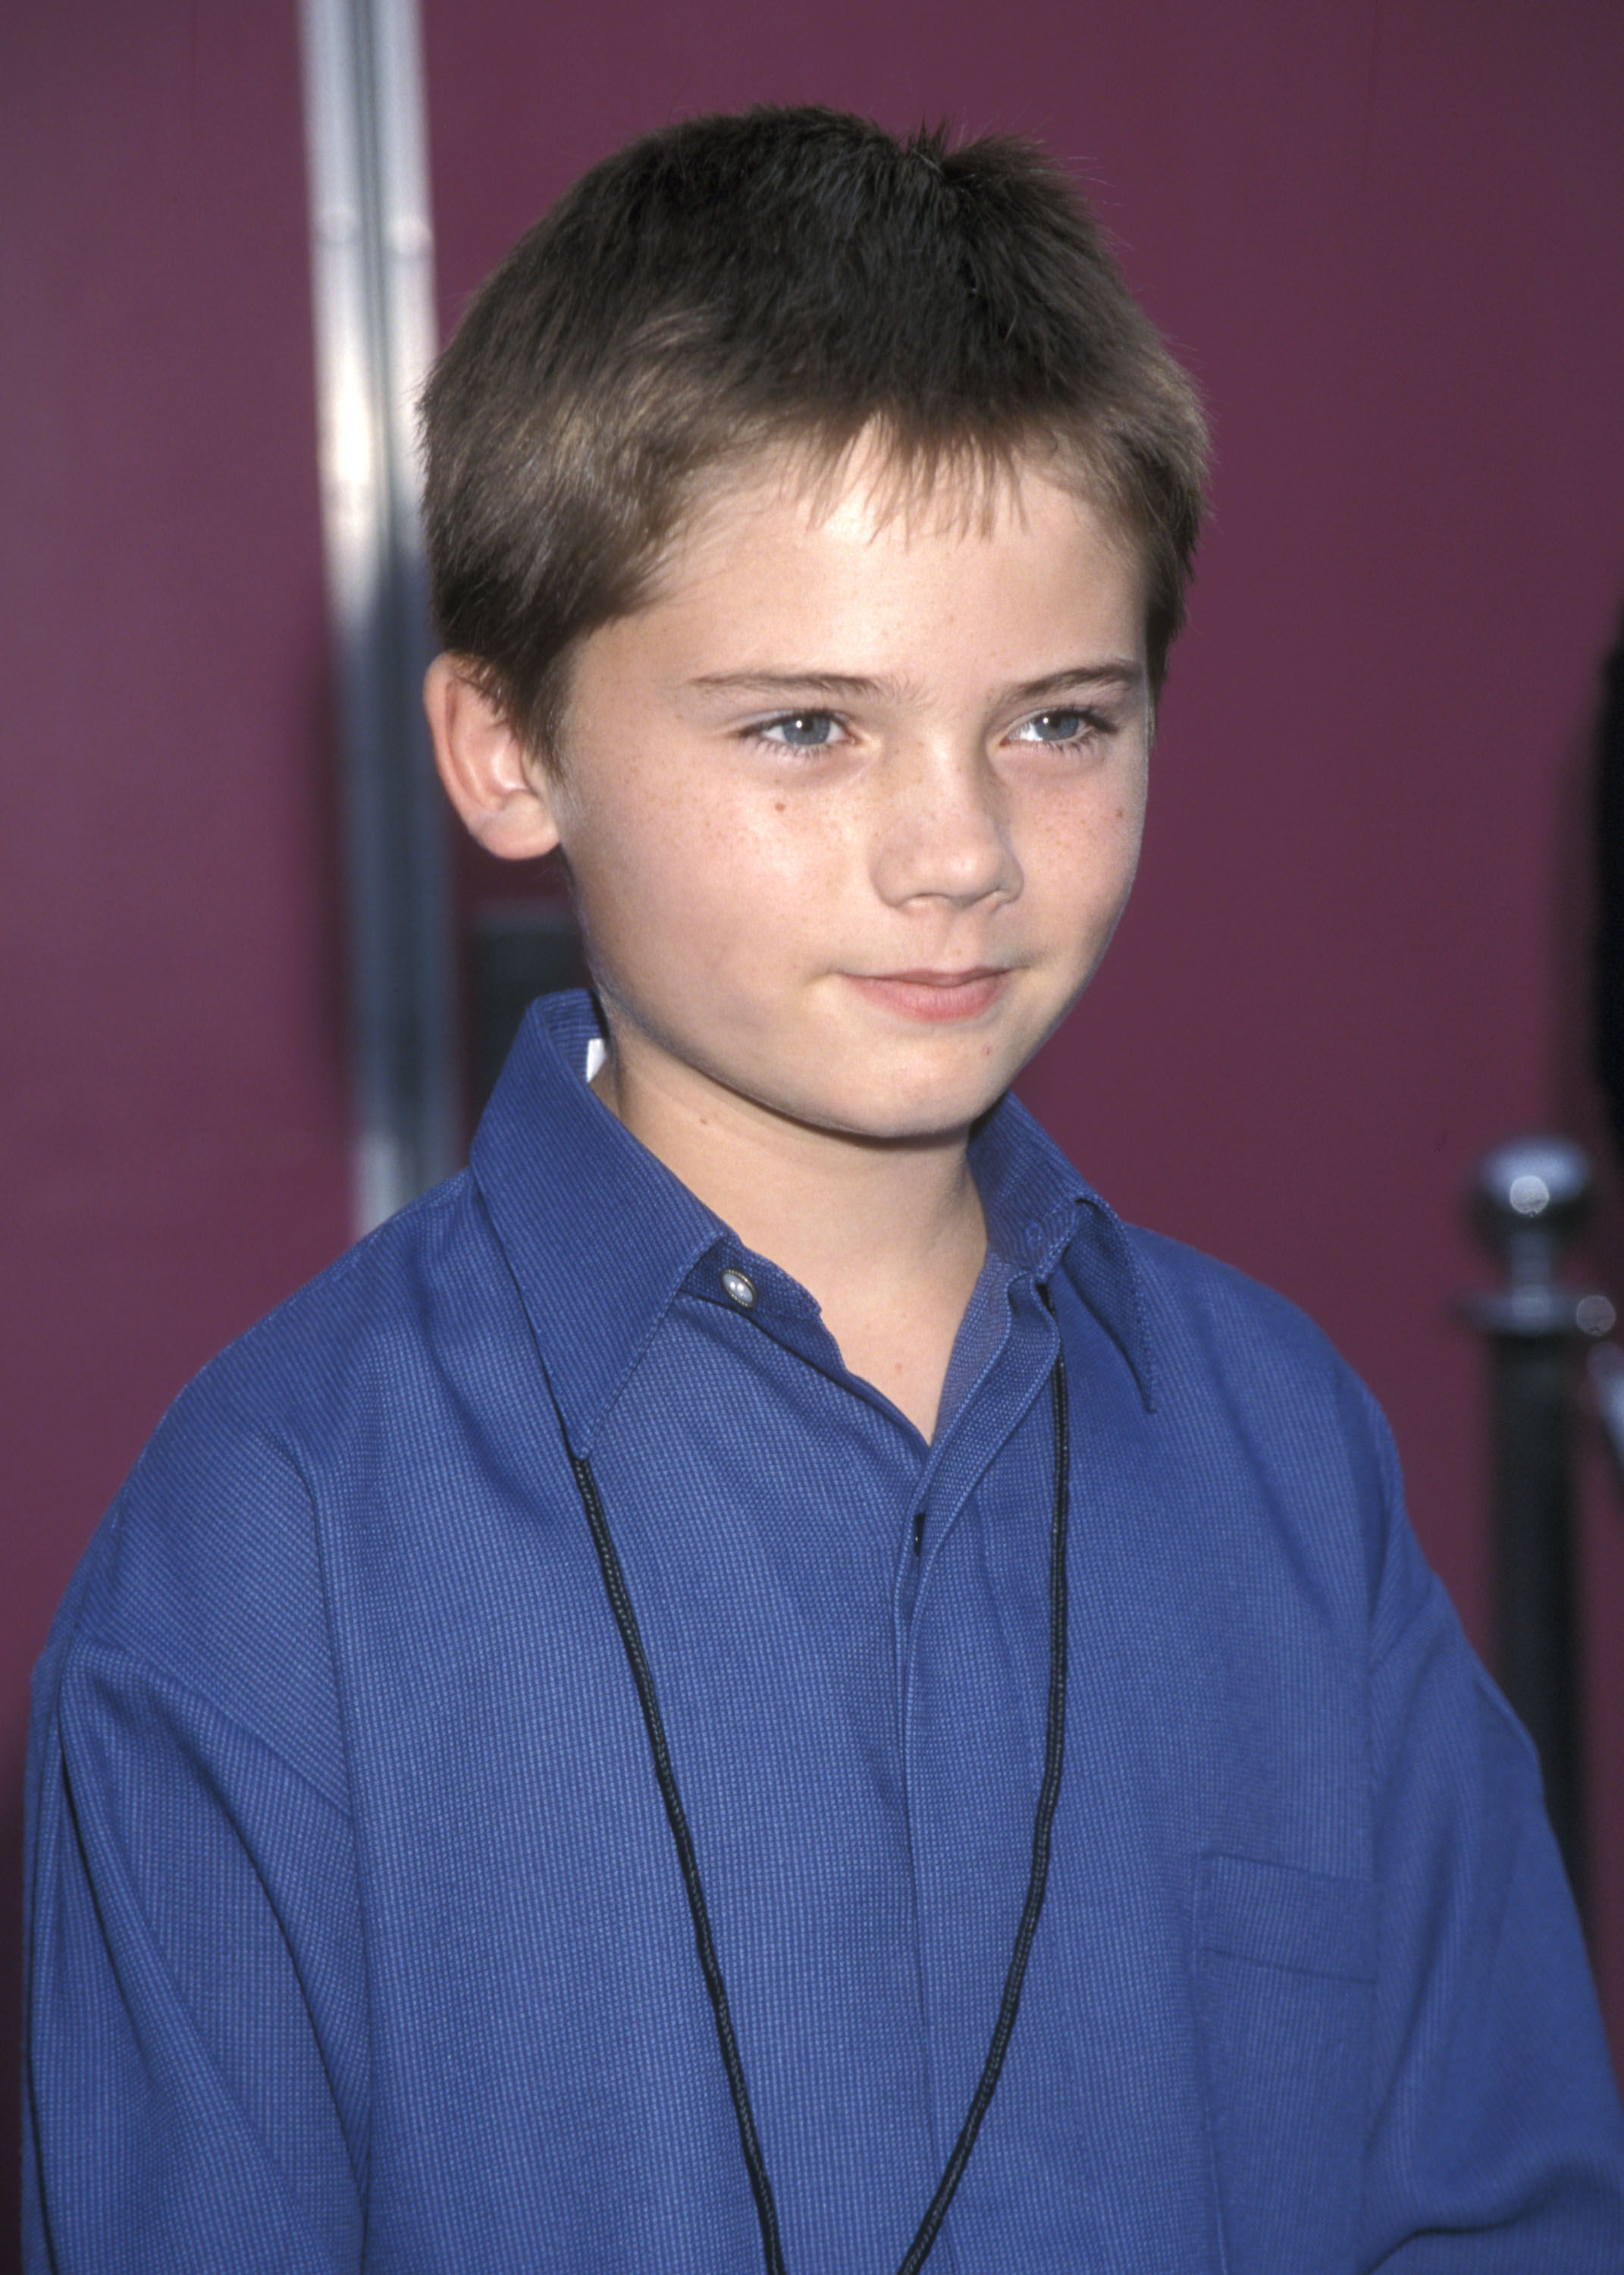 Der Schauspieler Jake Lloyd am 7. November 1999 in Universal City, Kalifornien. | Quelle: Getty Images